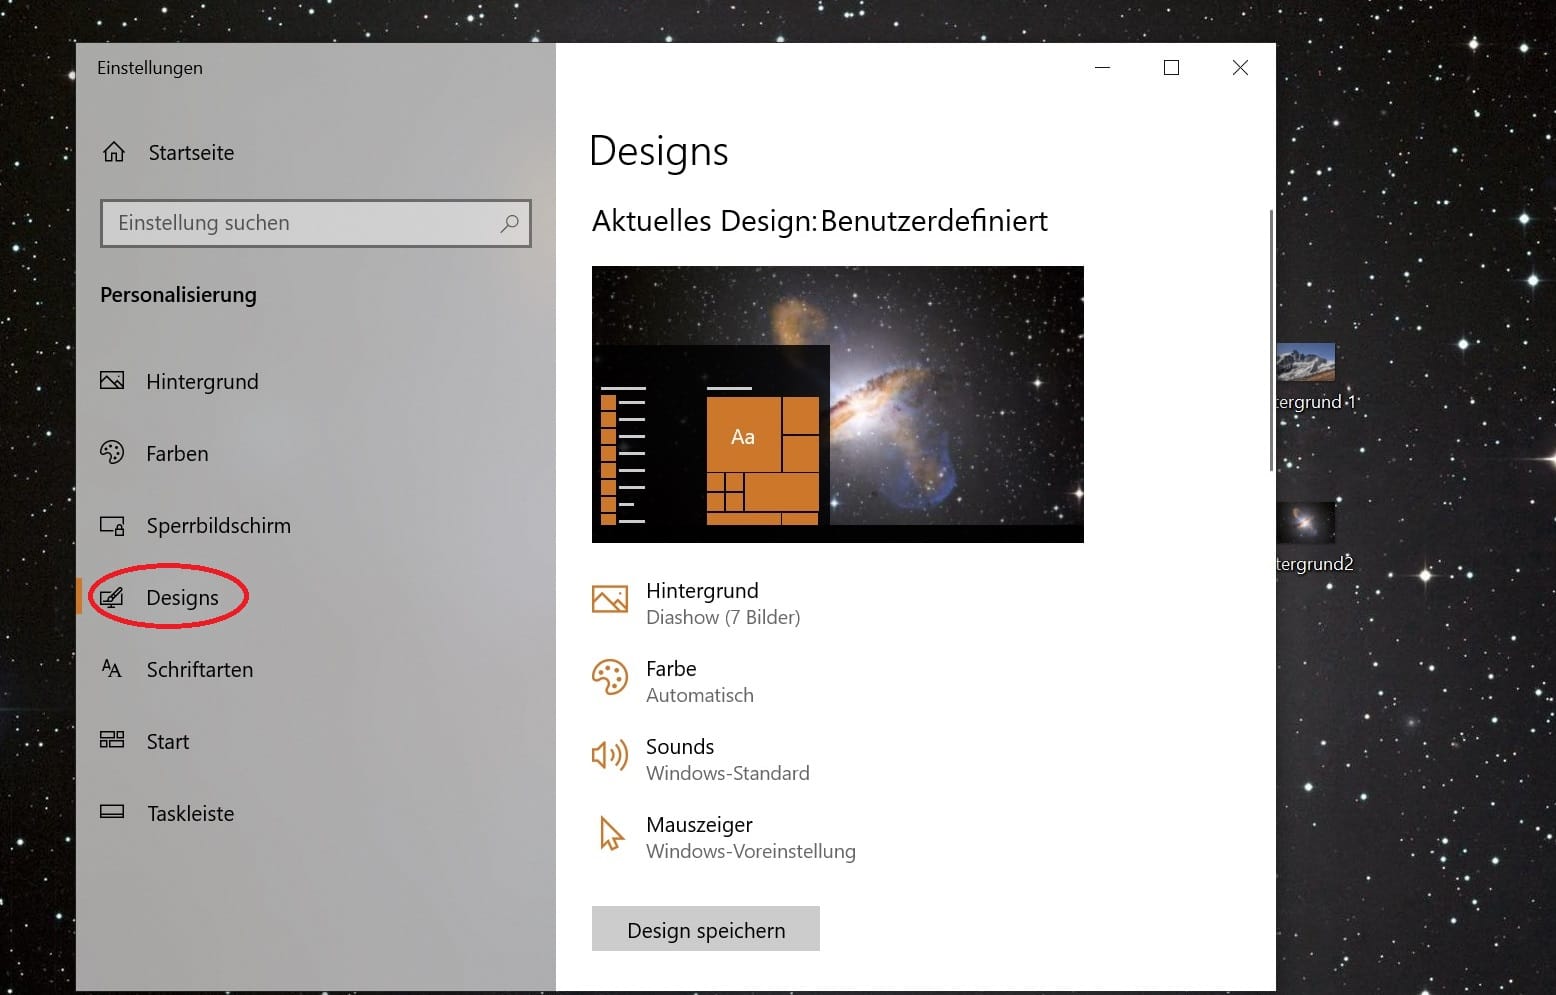 Um das Design zu wechseln, klicken Sie auf "Designs". Hier lassen sich auch weitere Designs aus dem Microsoft Store herunterladen.